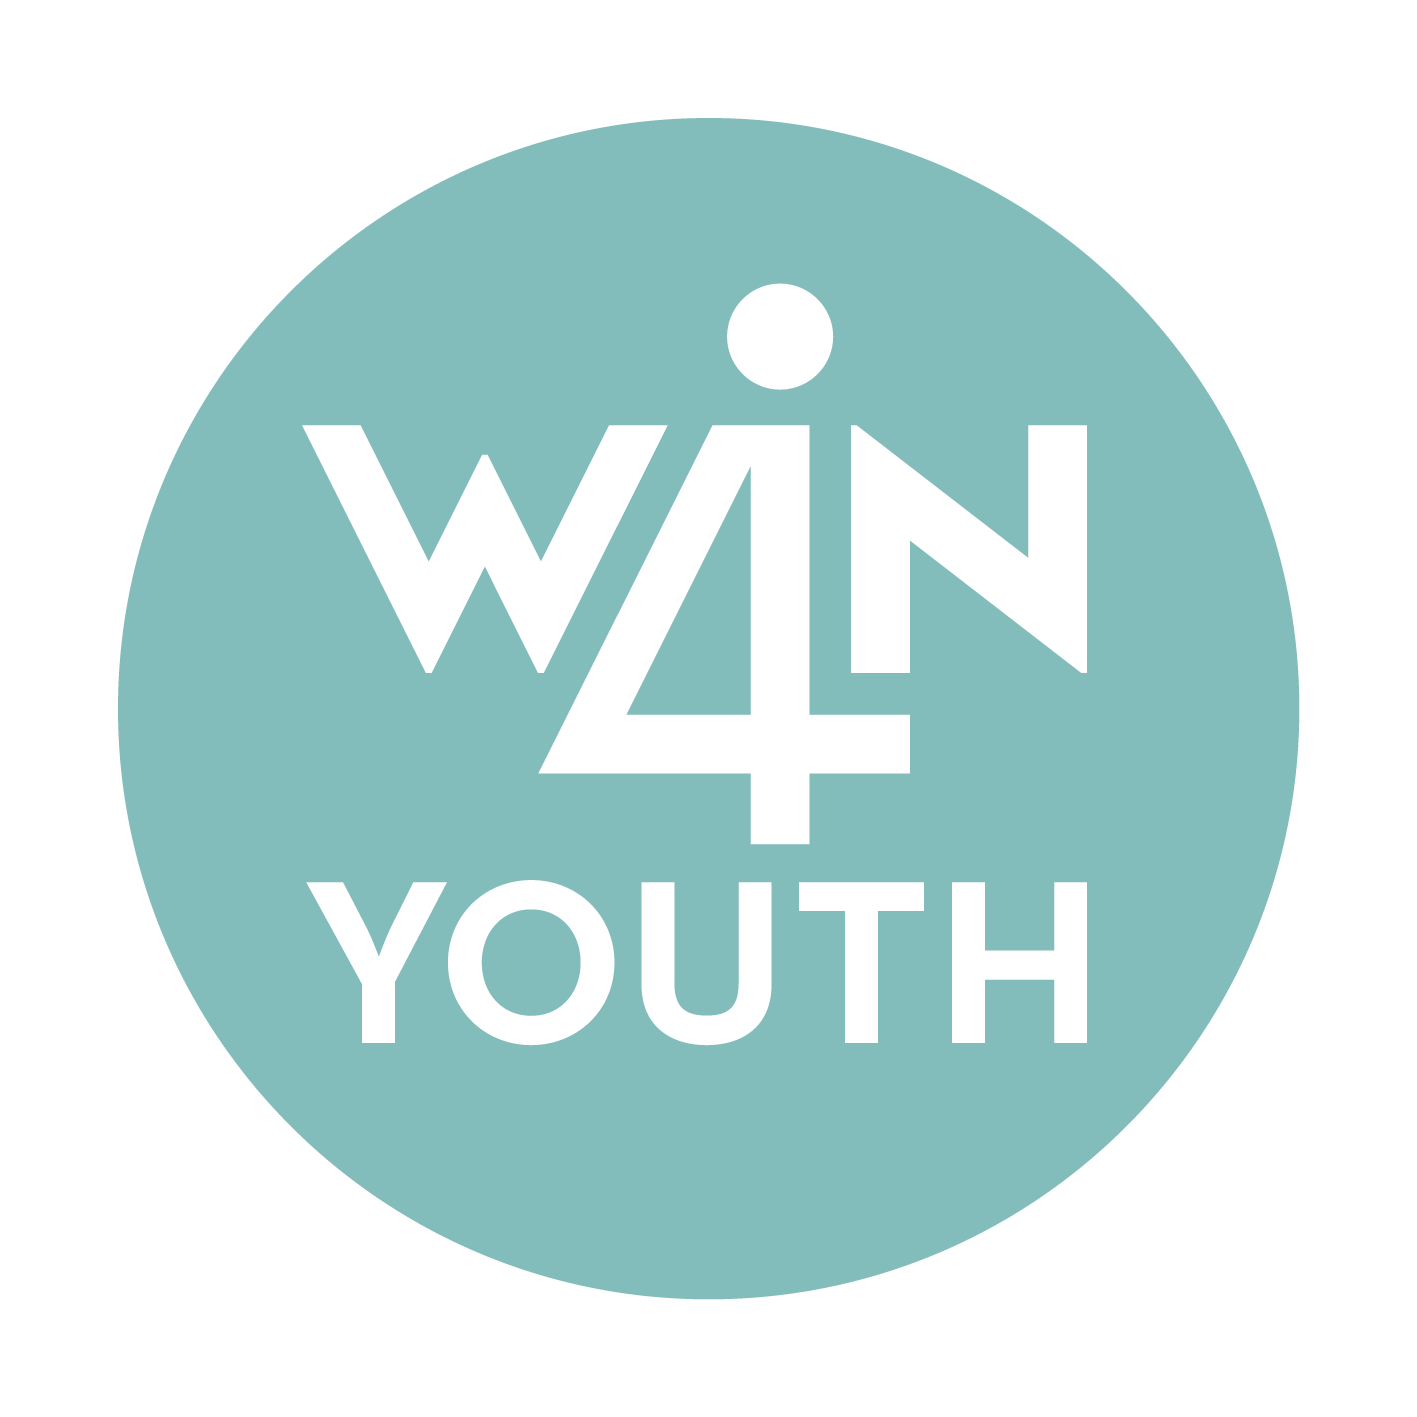 Logo Win4Youth